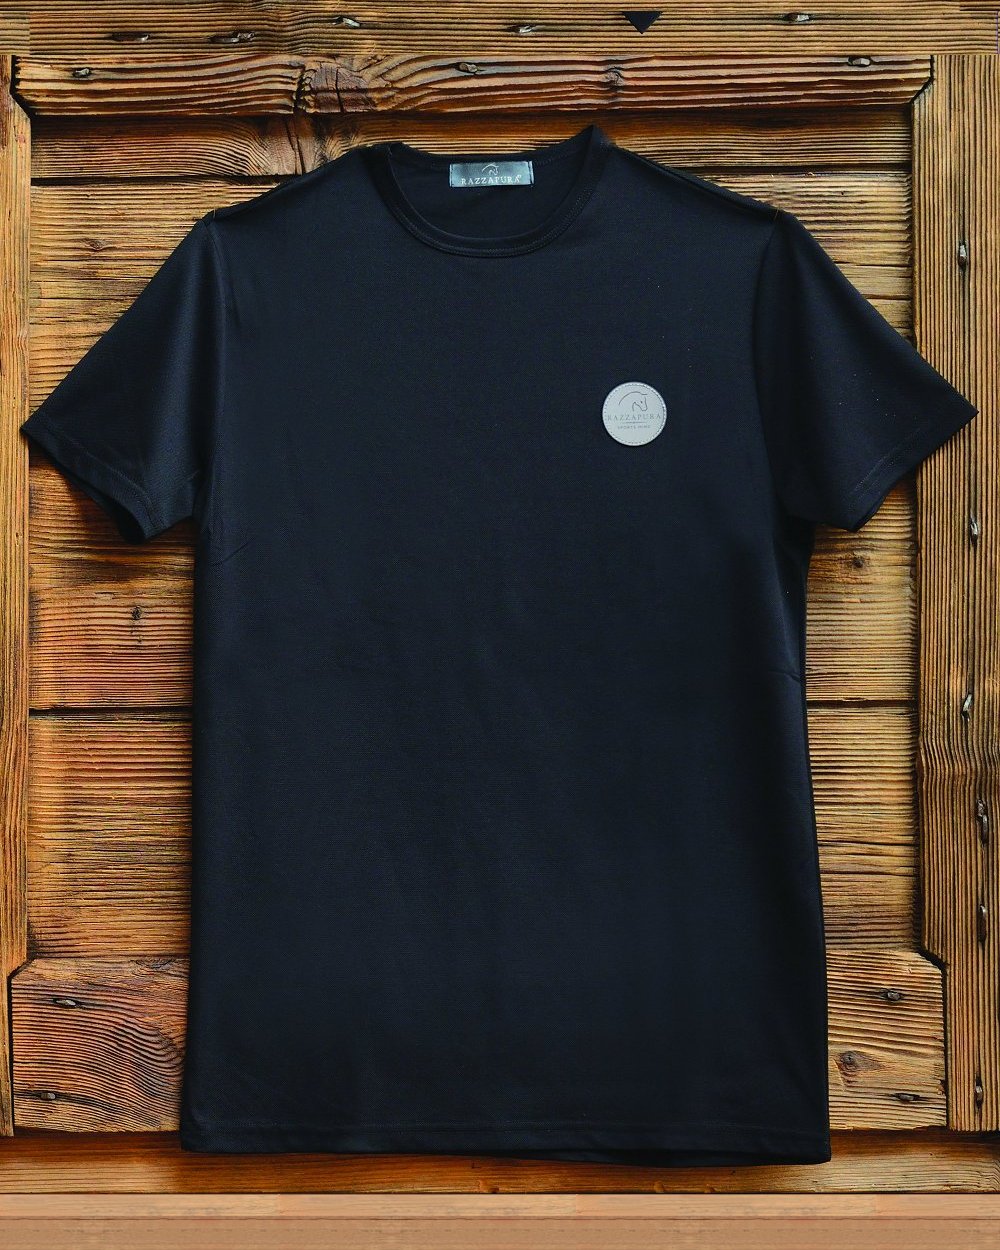 T-shirt nera con logo applicato.